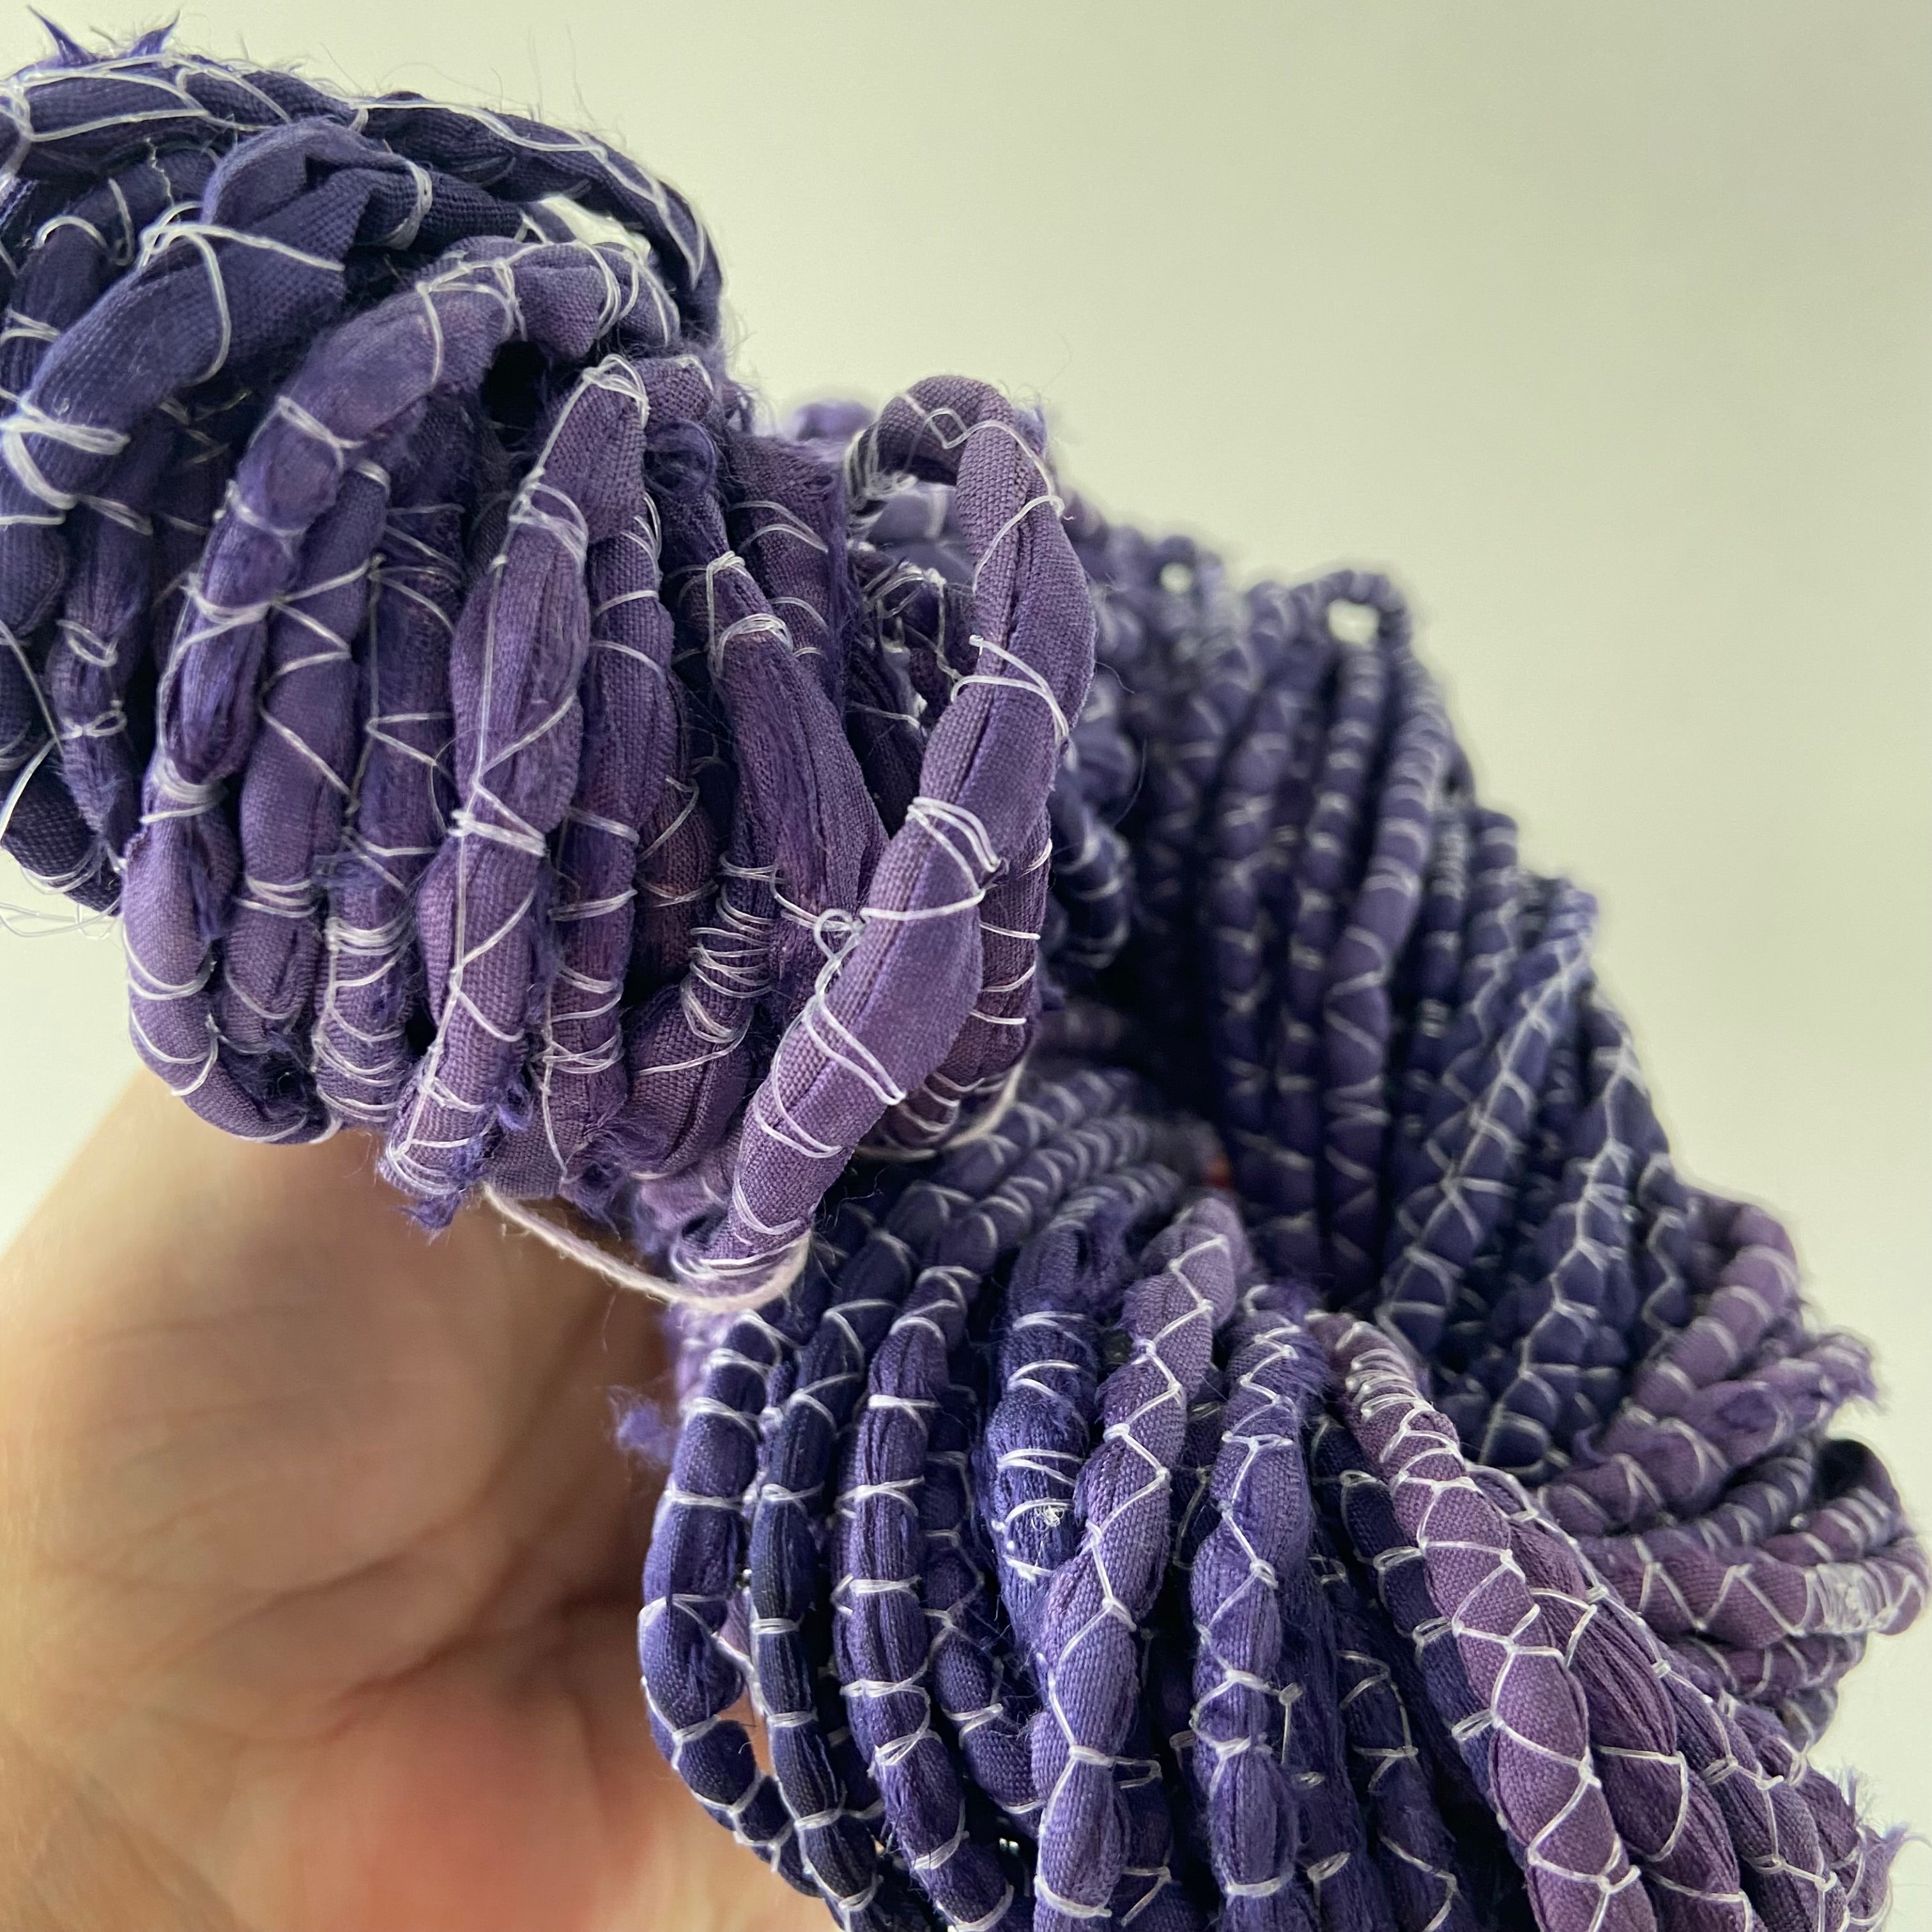 Purple Sea Urchin on Recycled Sari Silk Cording Yarn